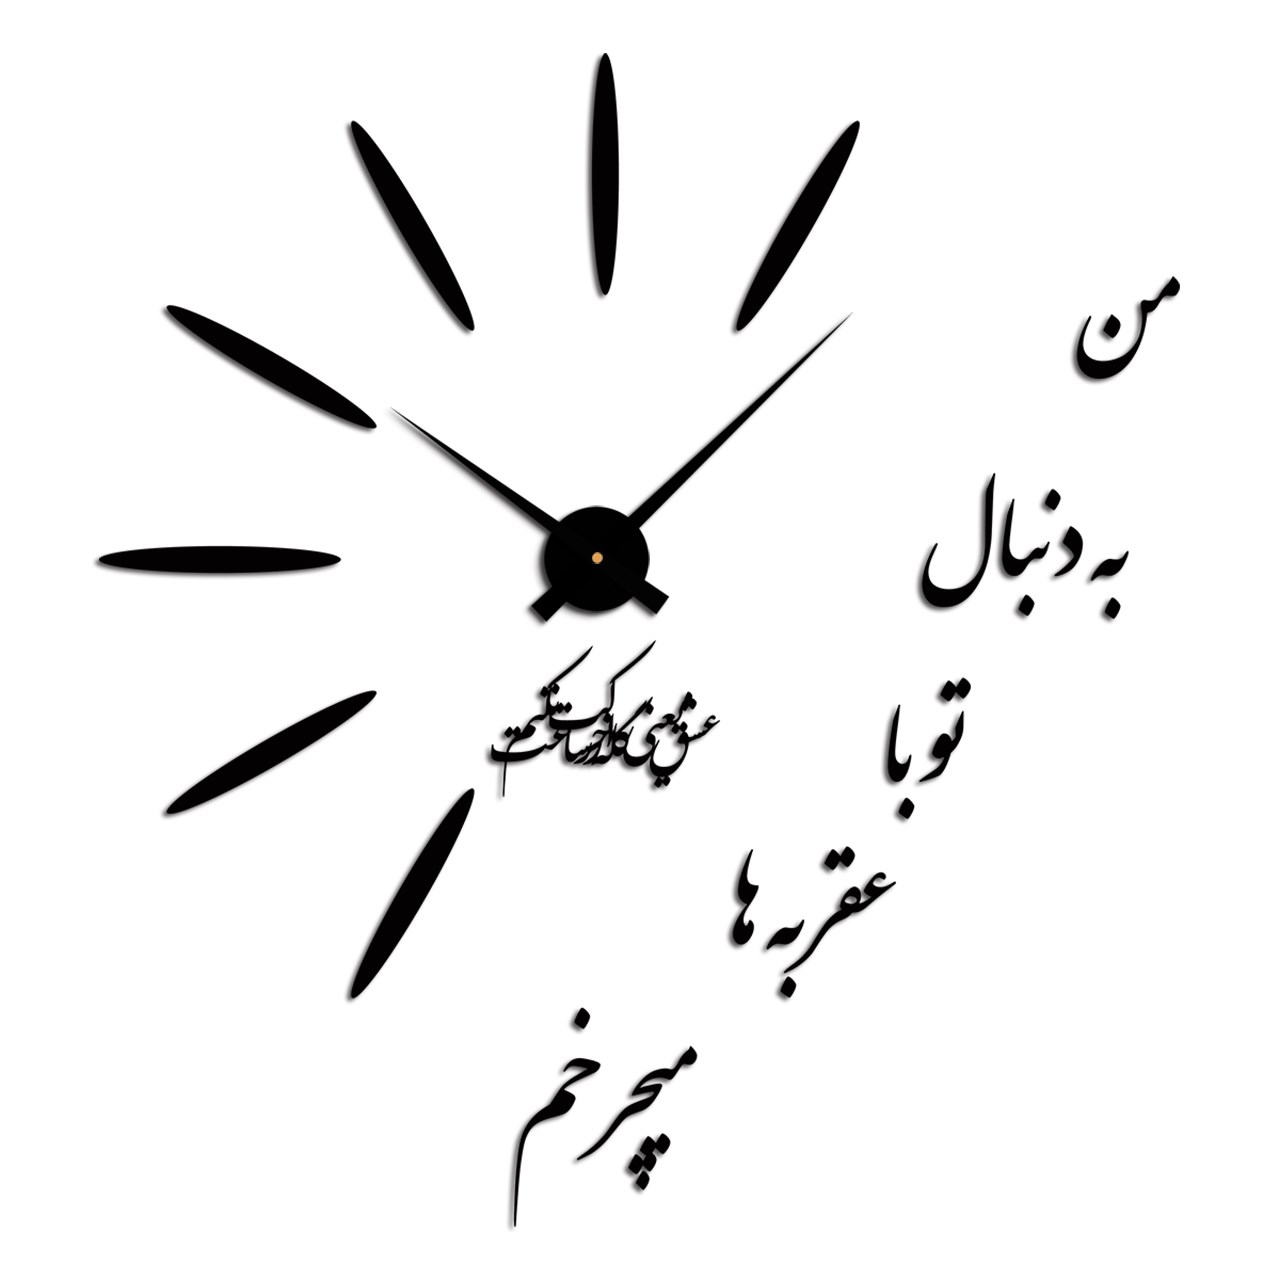 آنباکس ساعت دیواری پدیده شاپ طرح غزل توسط یونس عسکری بشکانی در تاریخ ۱۶ فروردین ۱۴۰۰